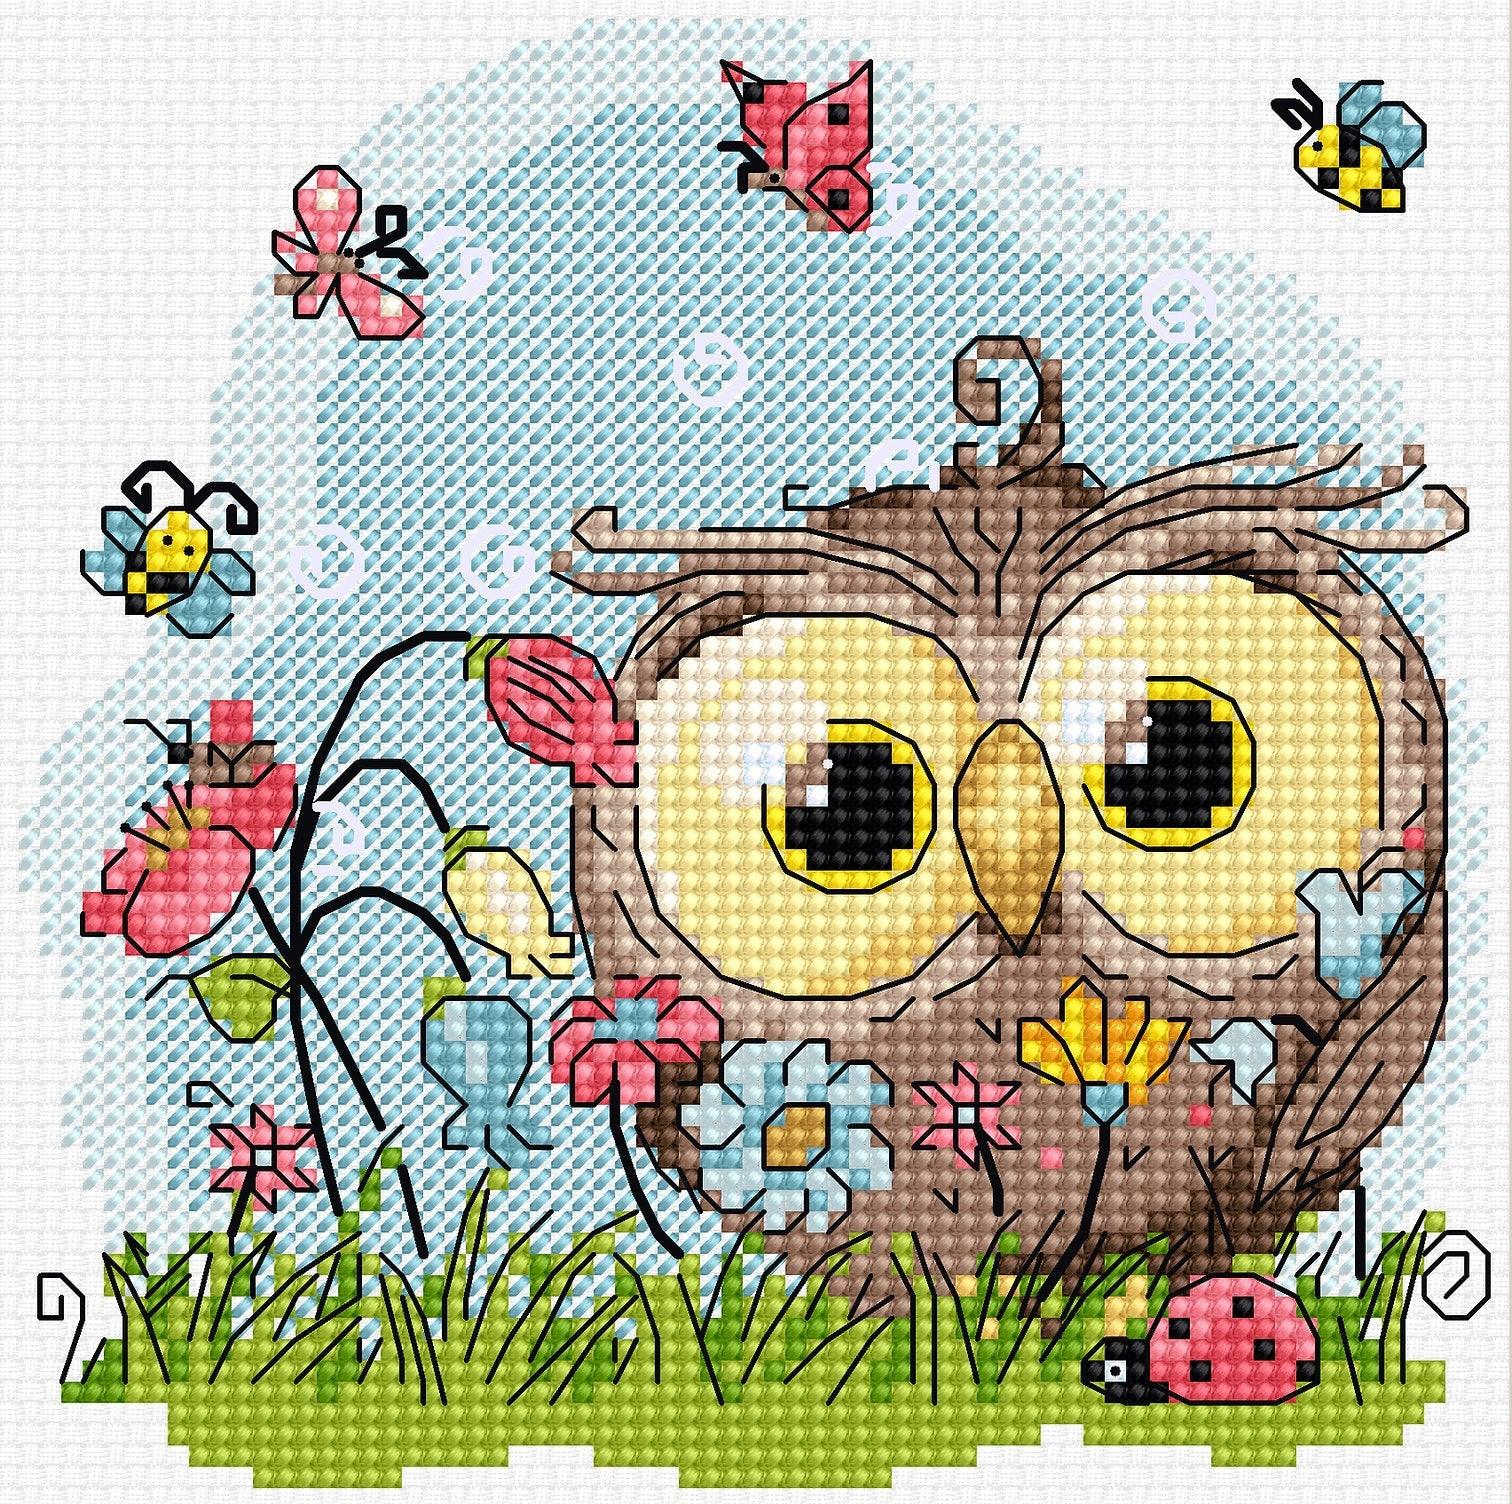 Cross Stitch Kit Luca-S - Happy Owl B1401 - Luca-S